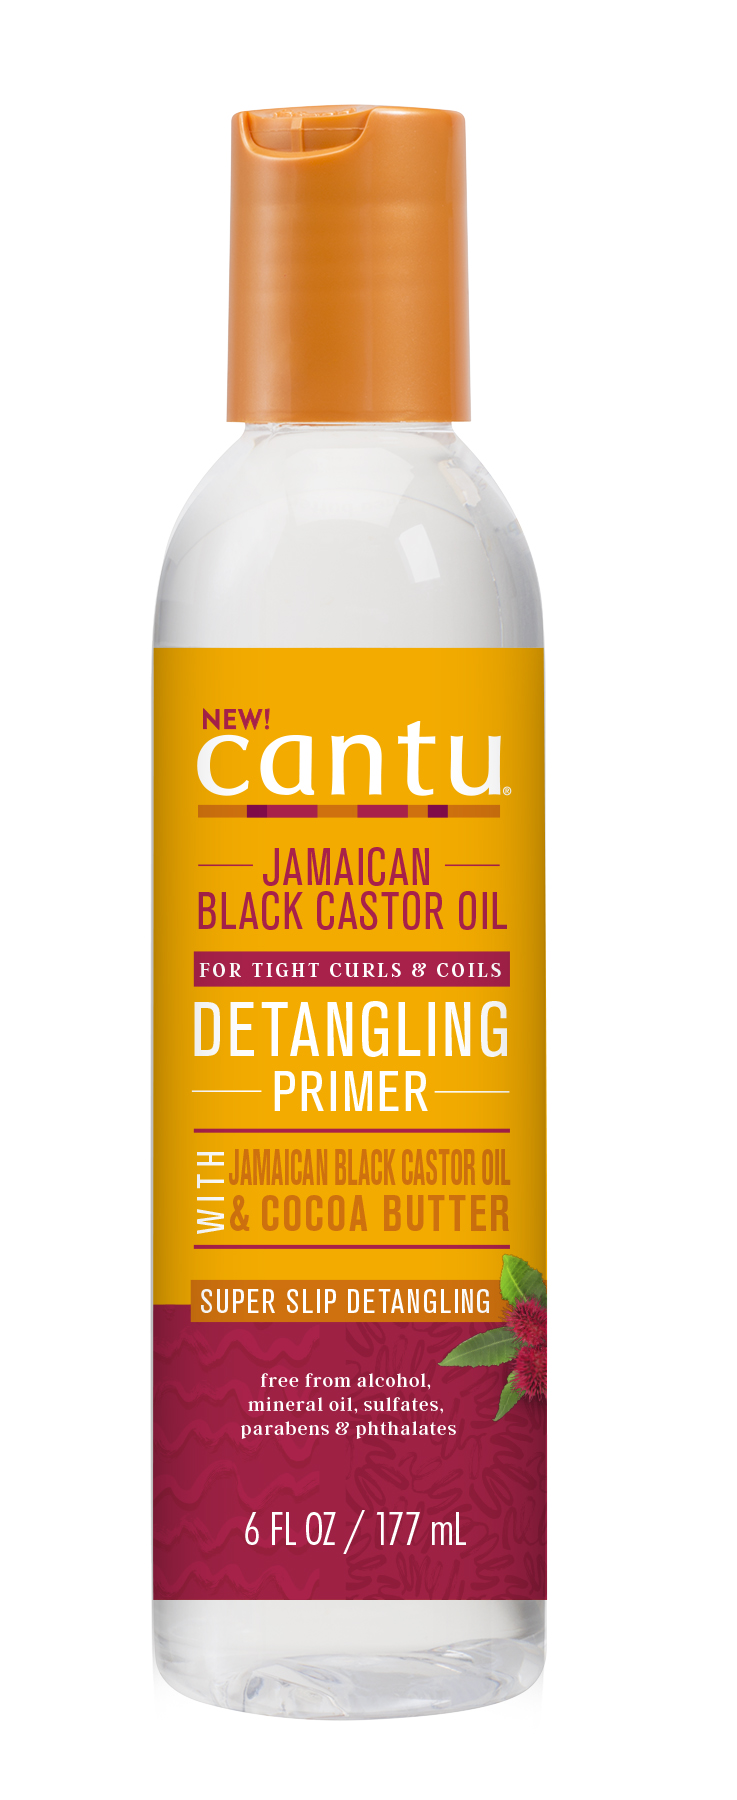 Cantu Jamaican Black Castor Oil Detangling Primer, 6 oz. - image 1 of 7